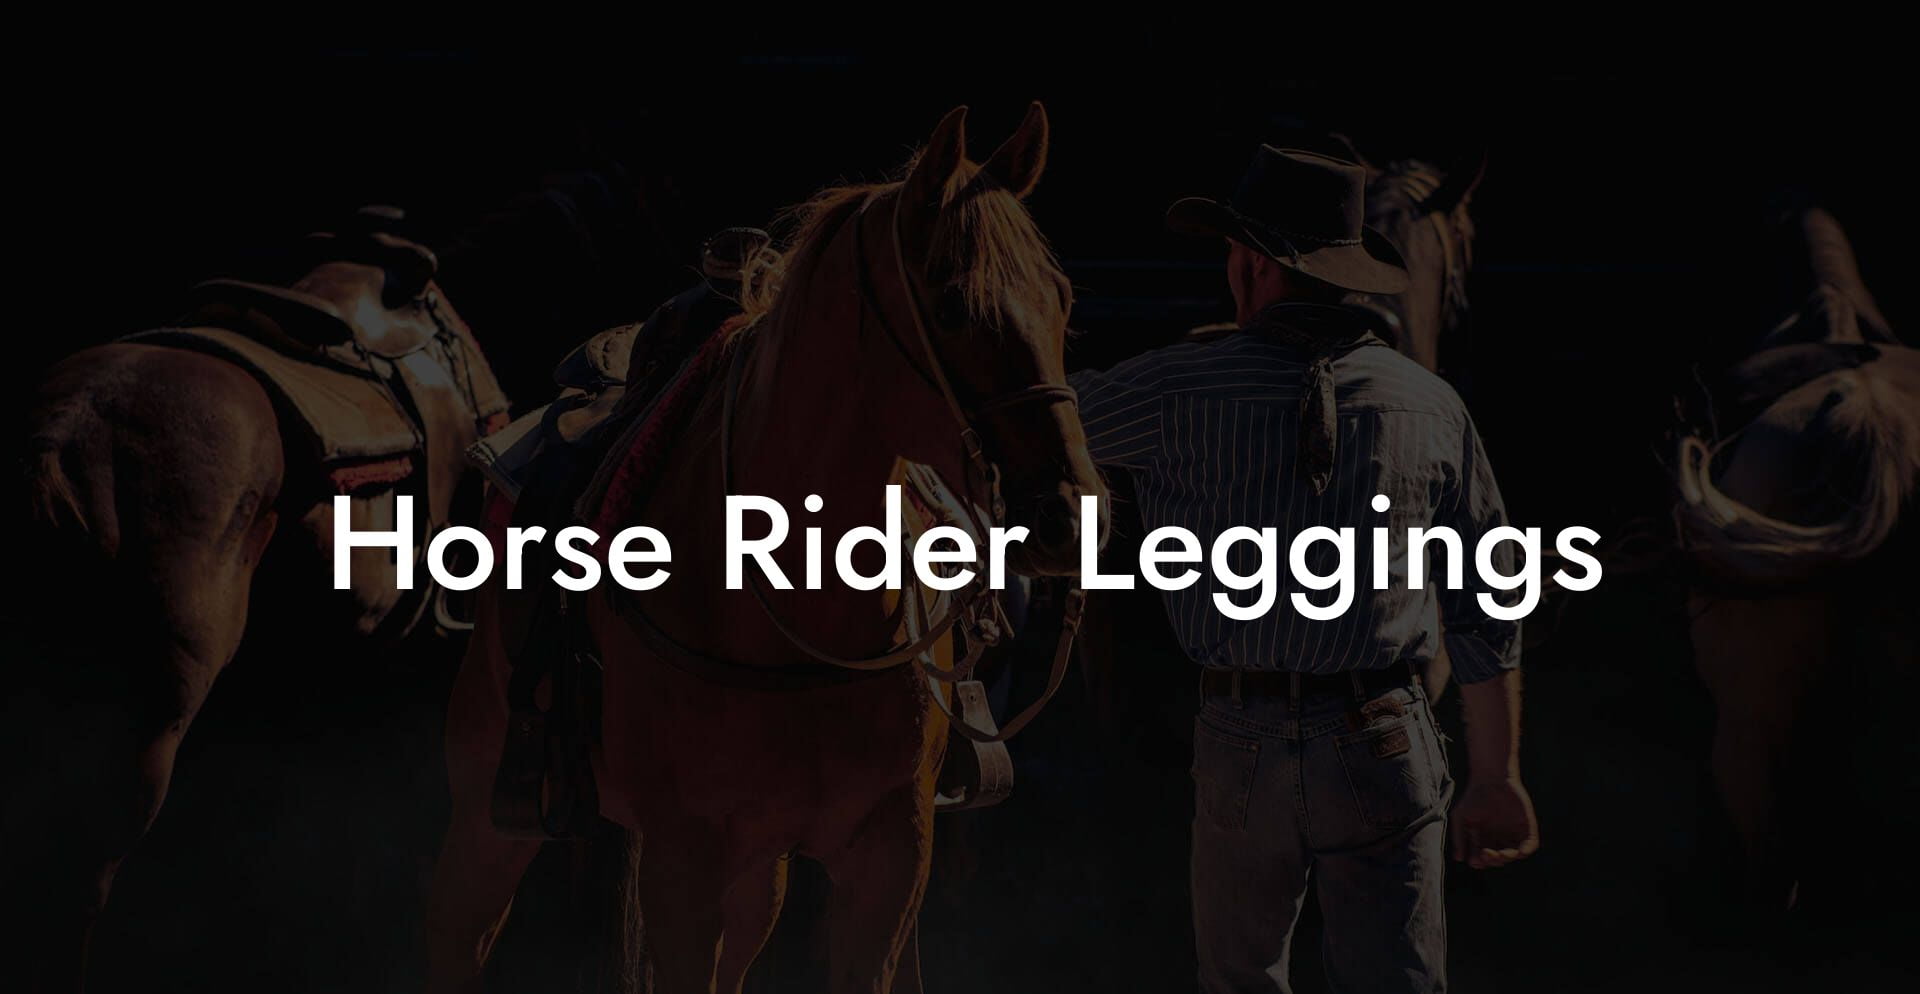 Horse Rider Leggings